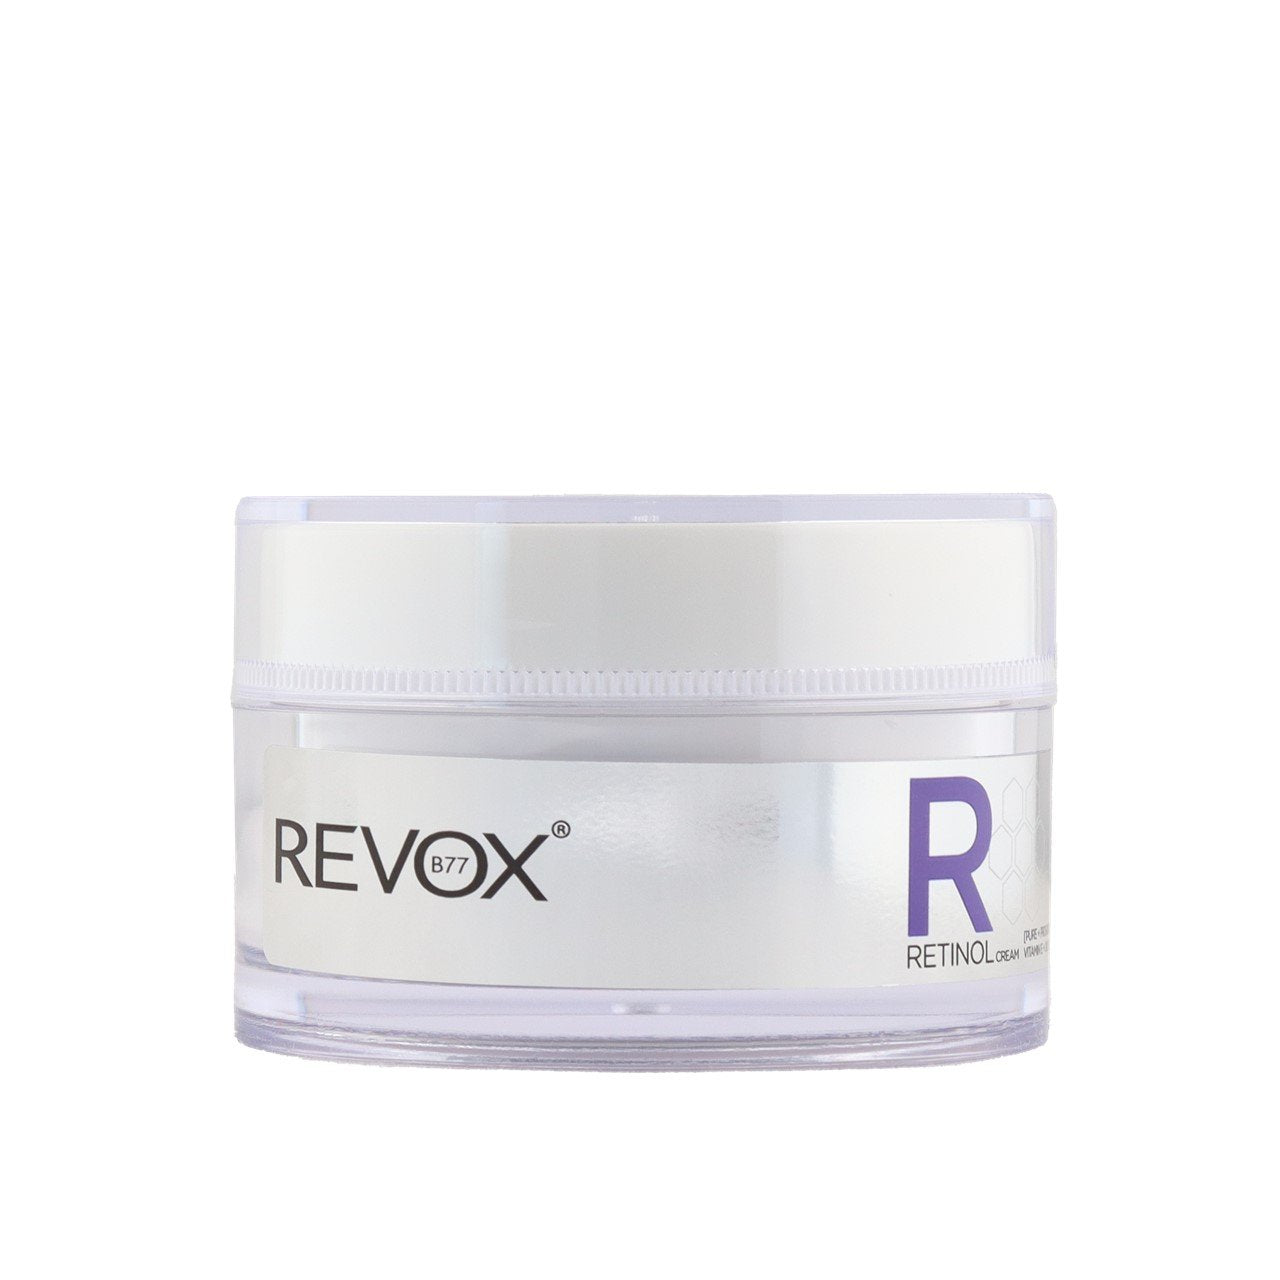 Revox B77 Retinol Creme de Proteção Diária SPF20 50ml